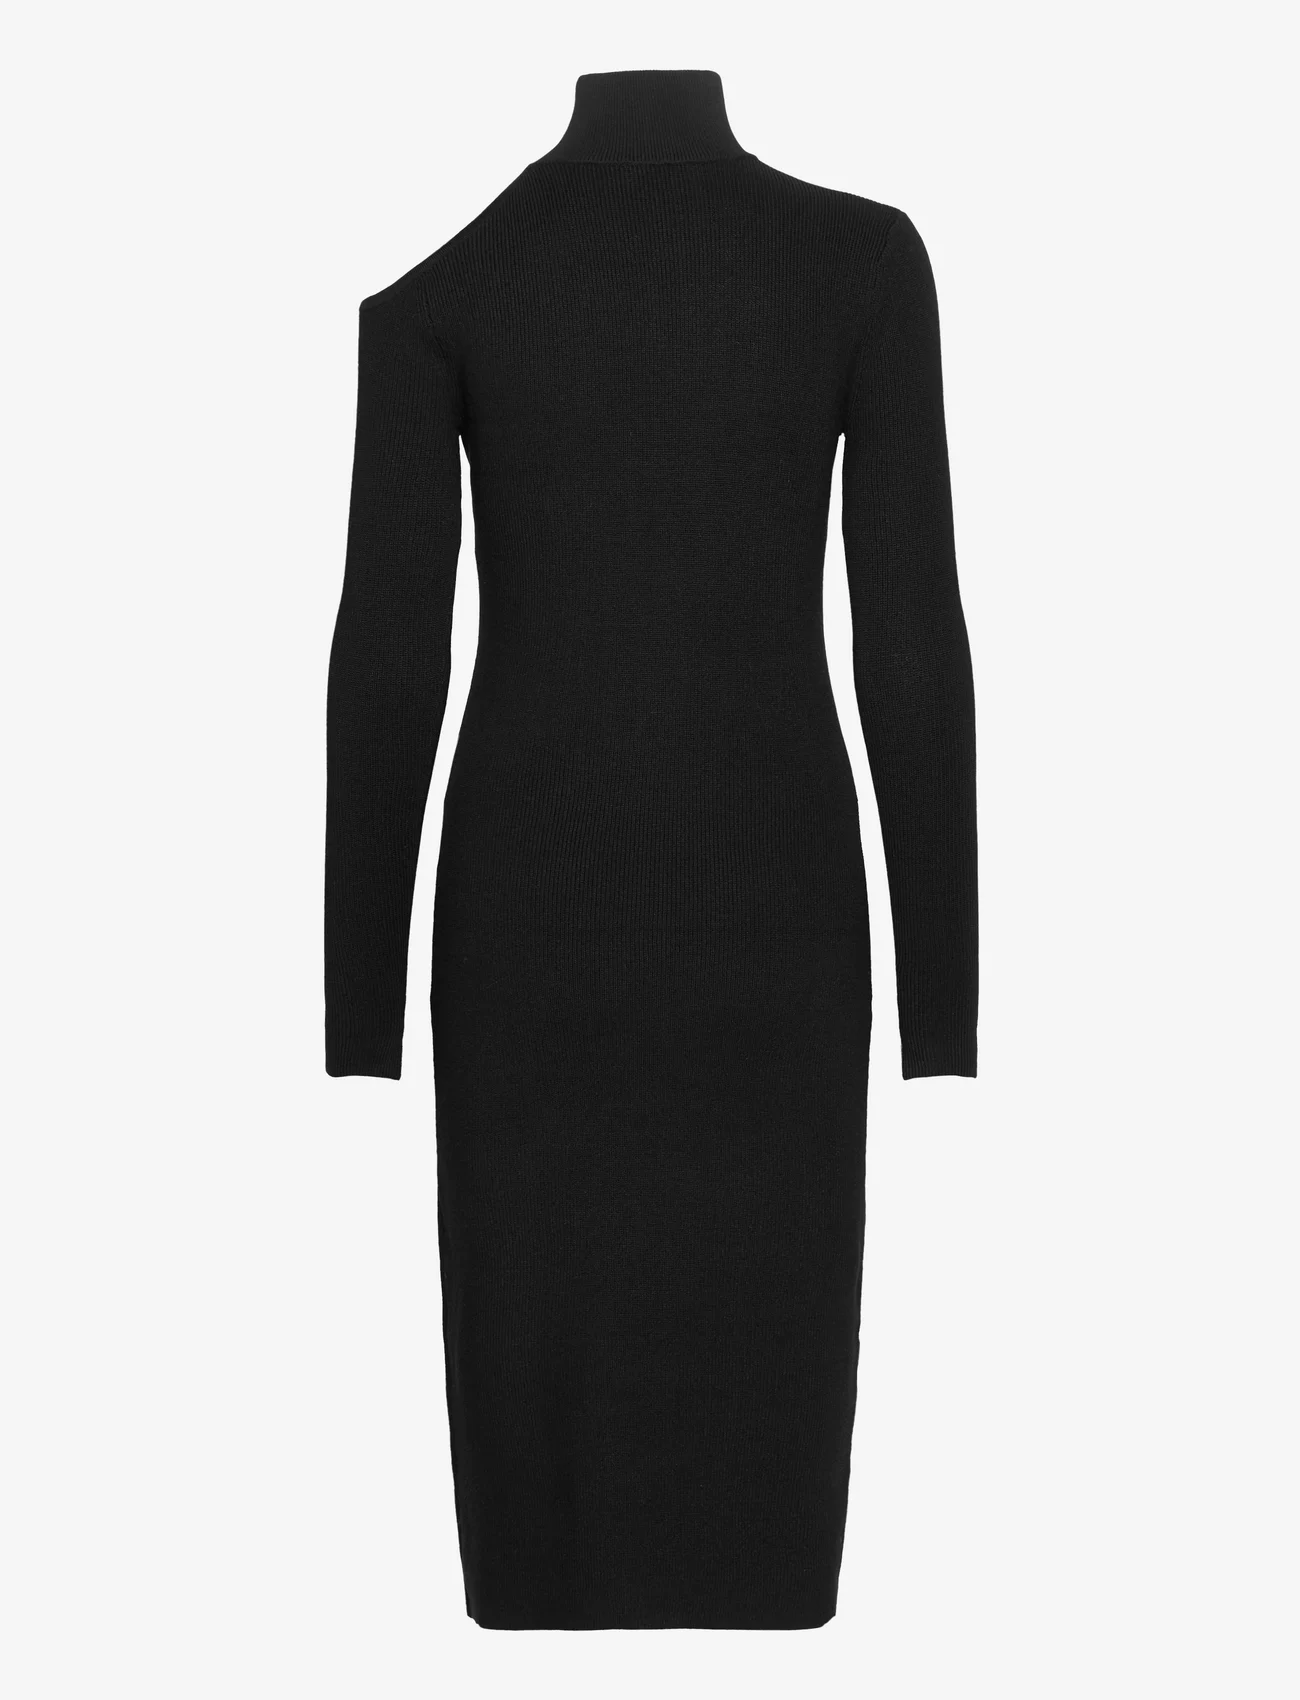 bzr - Lela Roxy dress - etuikleider - black - 1